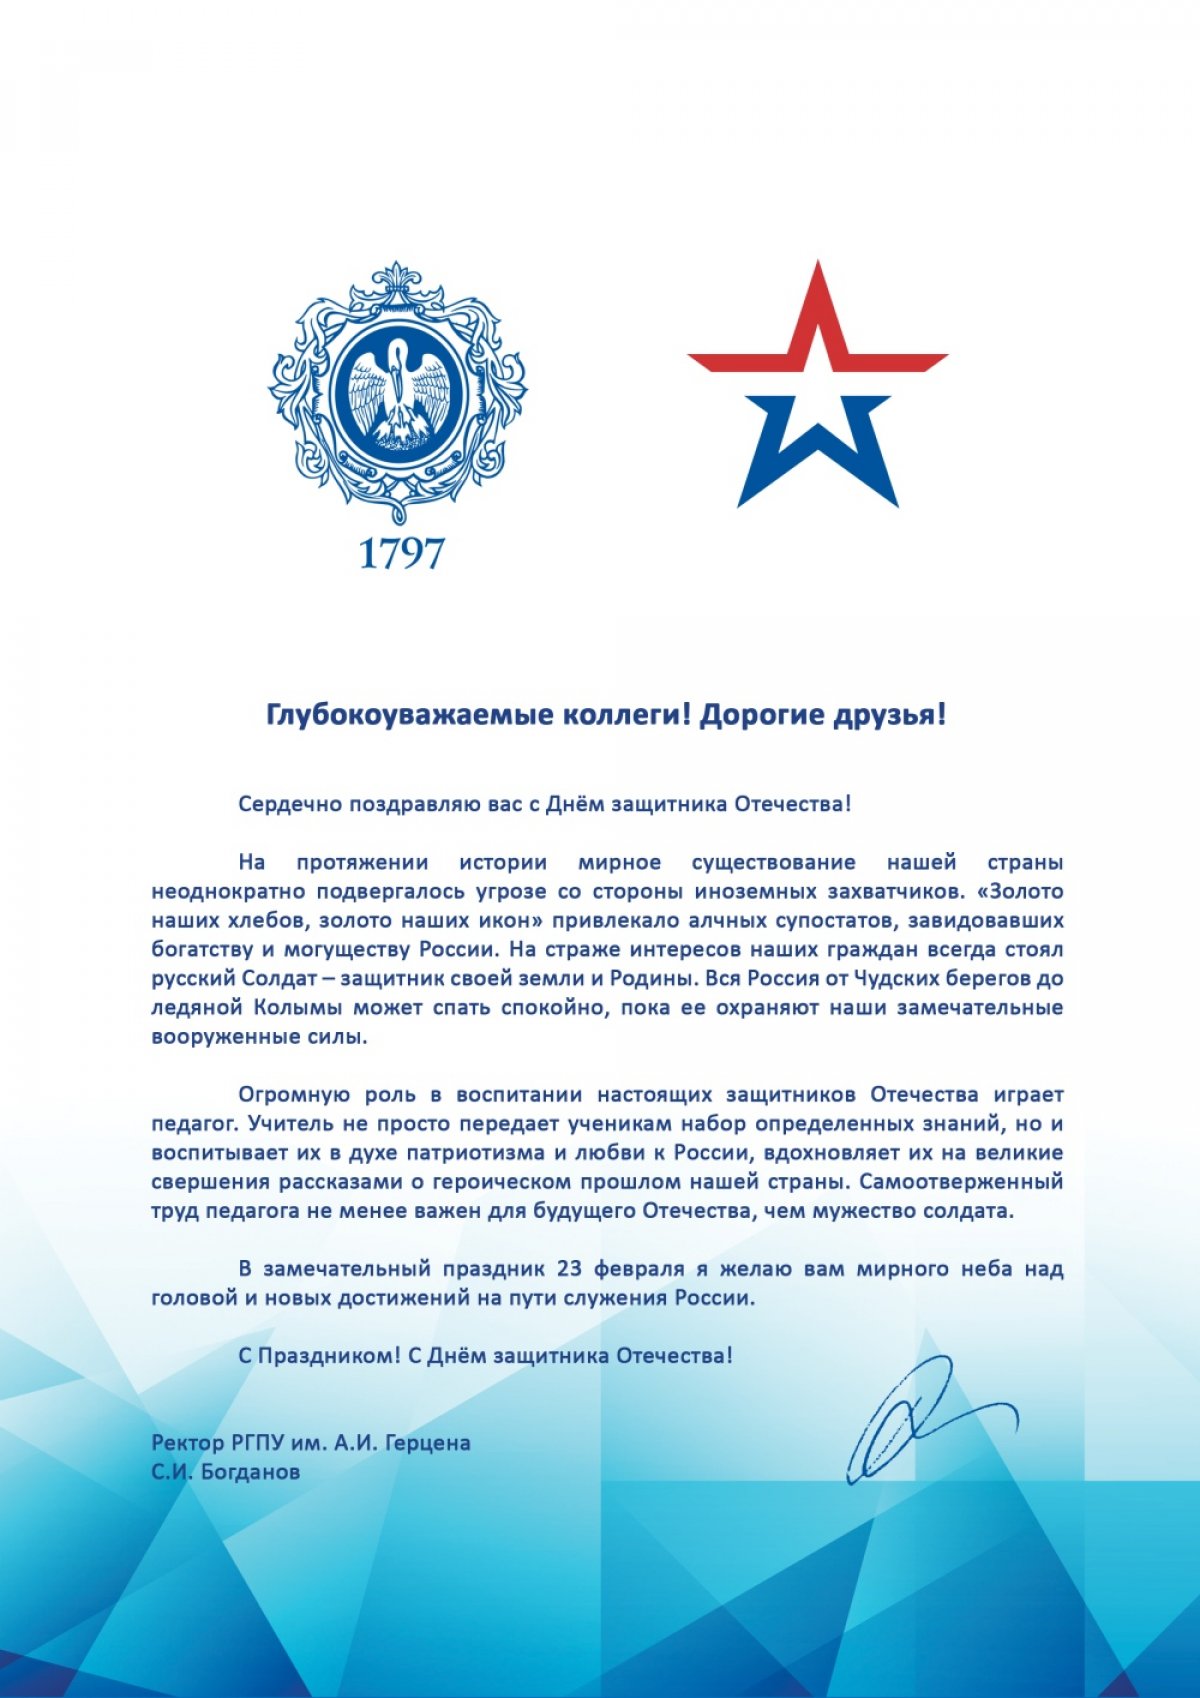 Поздравление с 23 февраля от ректора РГПУ им. А. И. Герцена С. И. Богданова